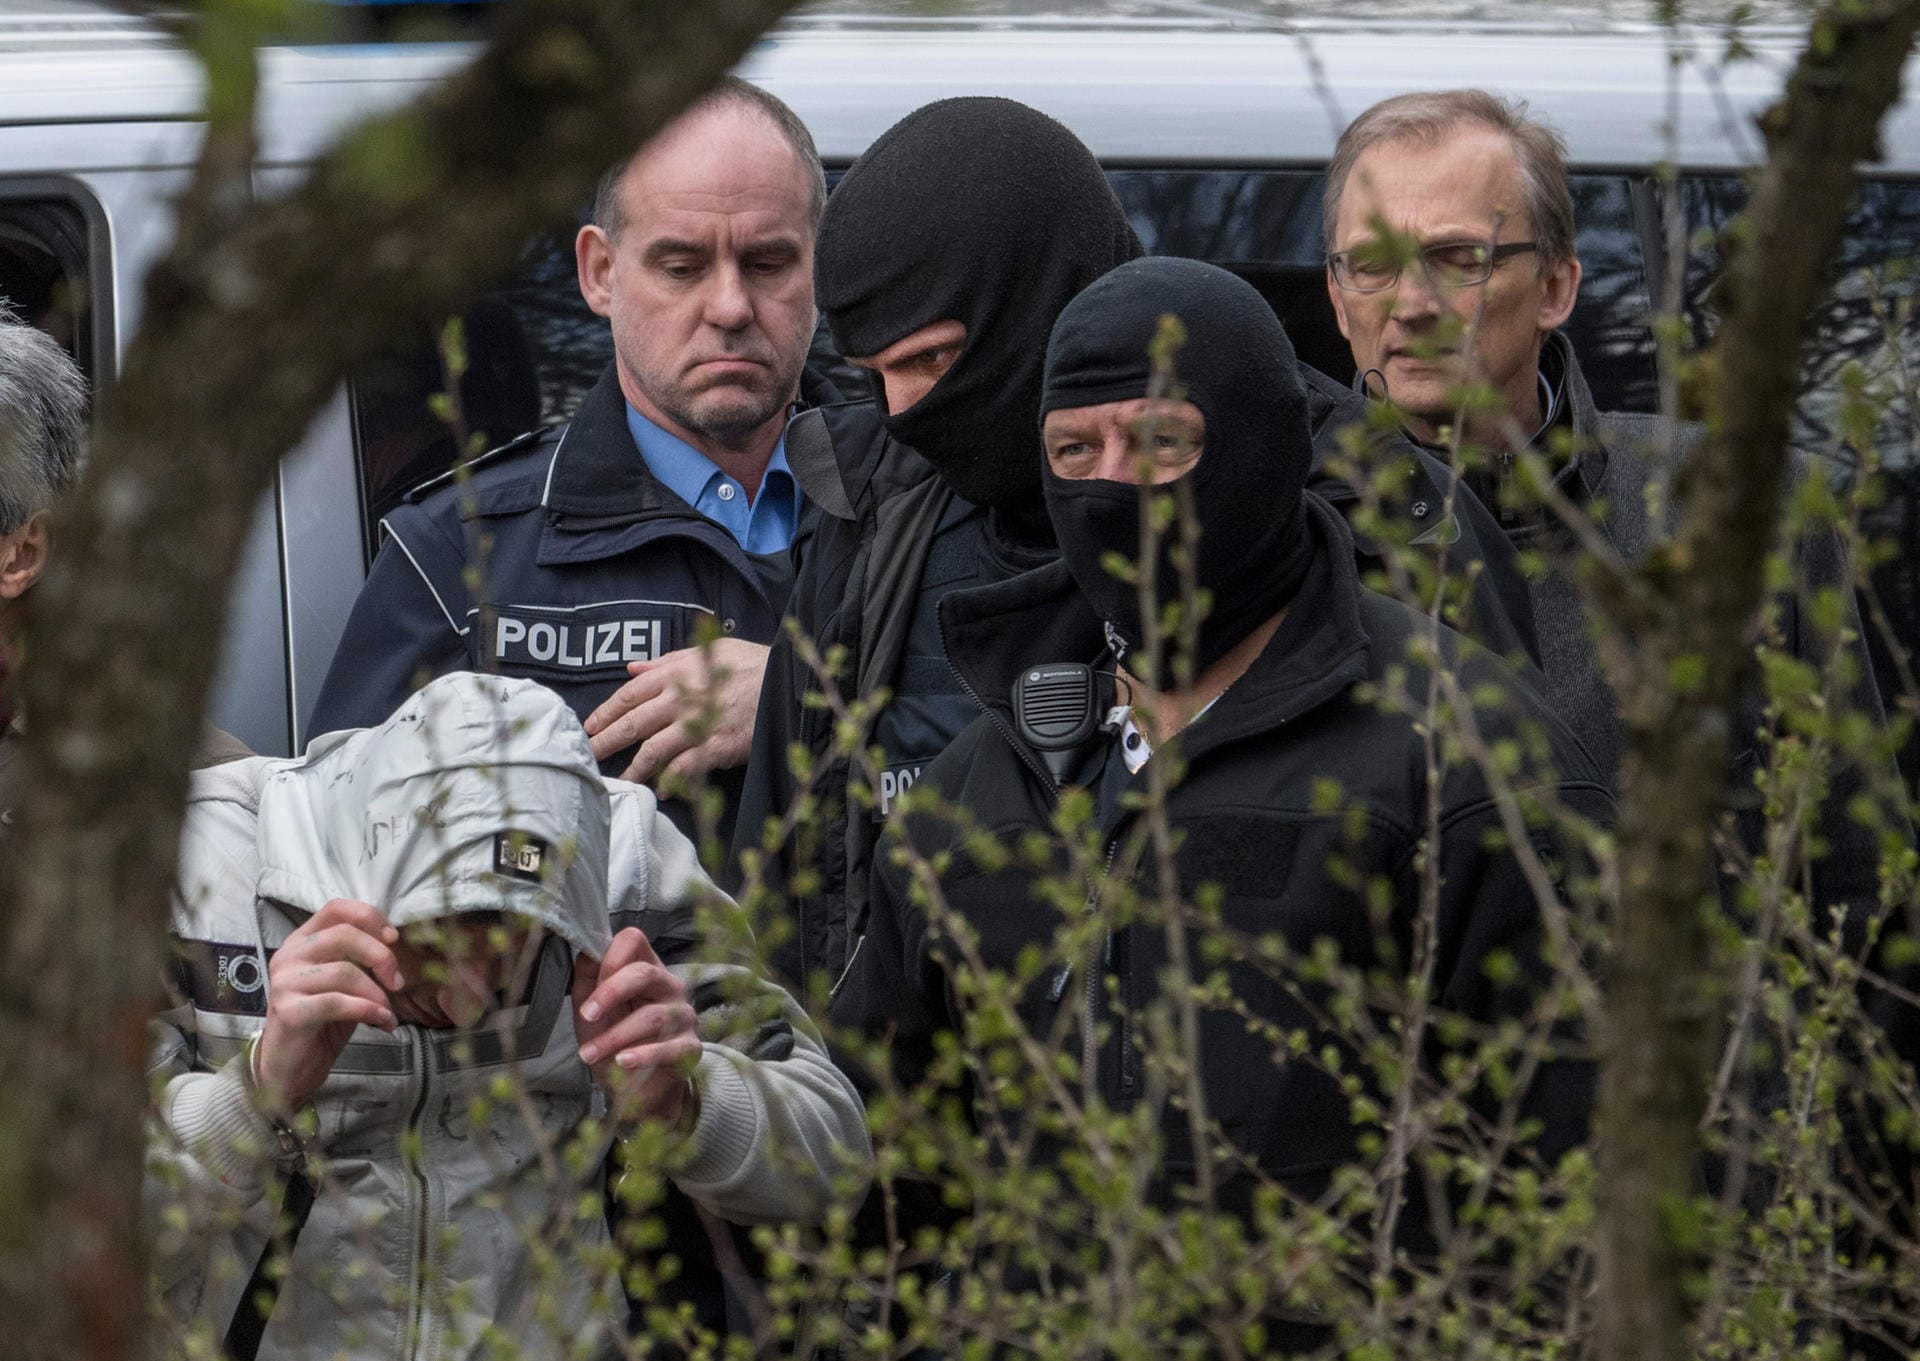 Angeklagter Ali B. am Tatort: Der Beschuldigte hat den Mord an der 14-jährigen Susanna zugegeben. Den Vorwurf der Vergewaltigung streitet er ab.